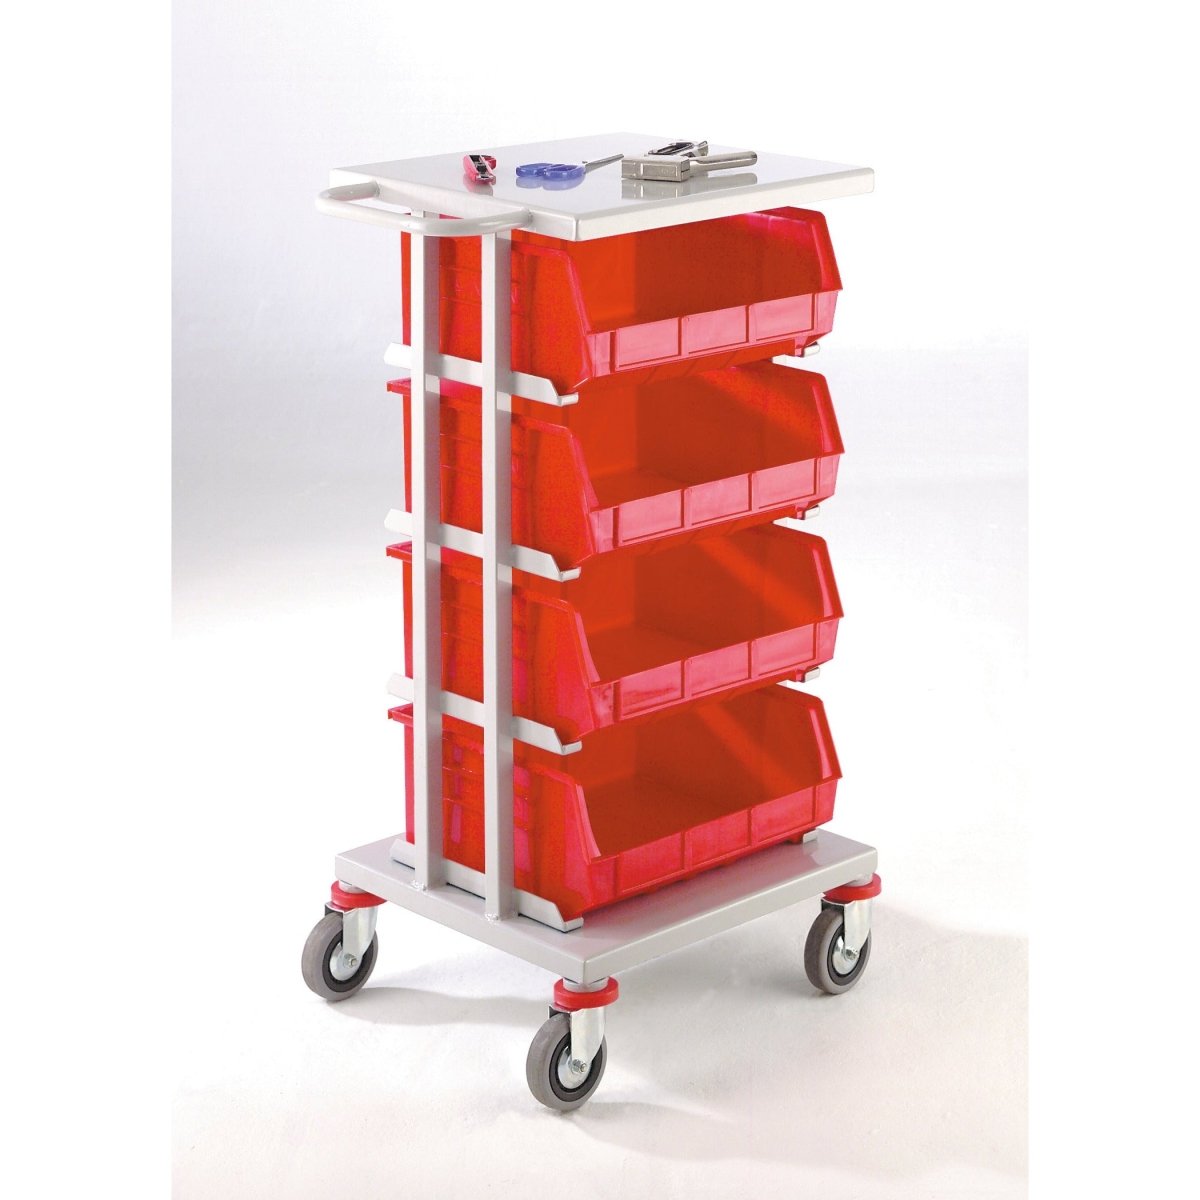 Tote Box & Bins - Warehouse Storage Products